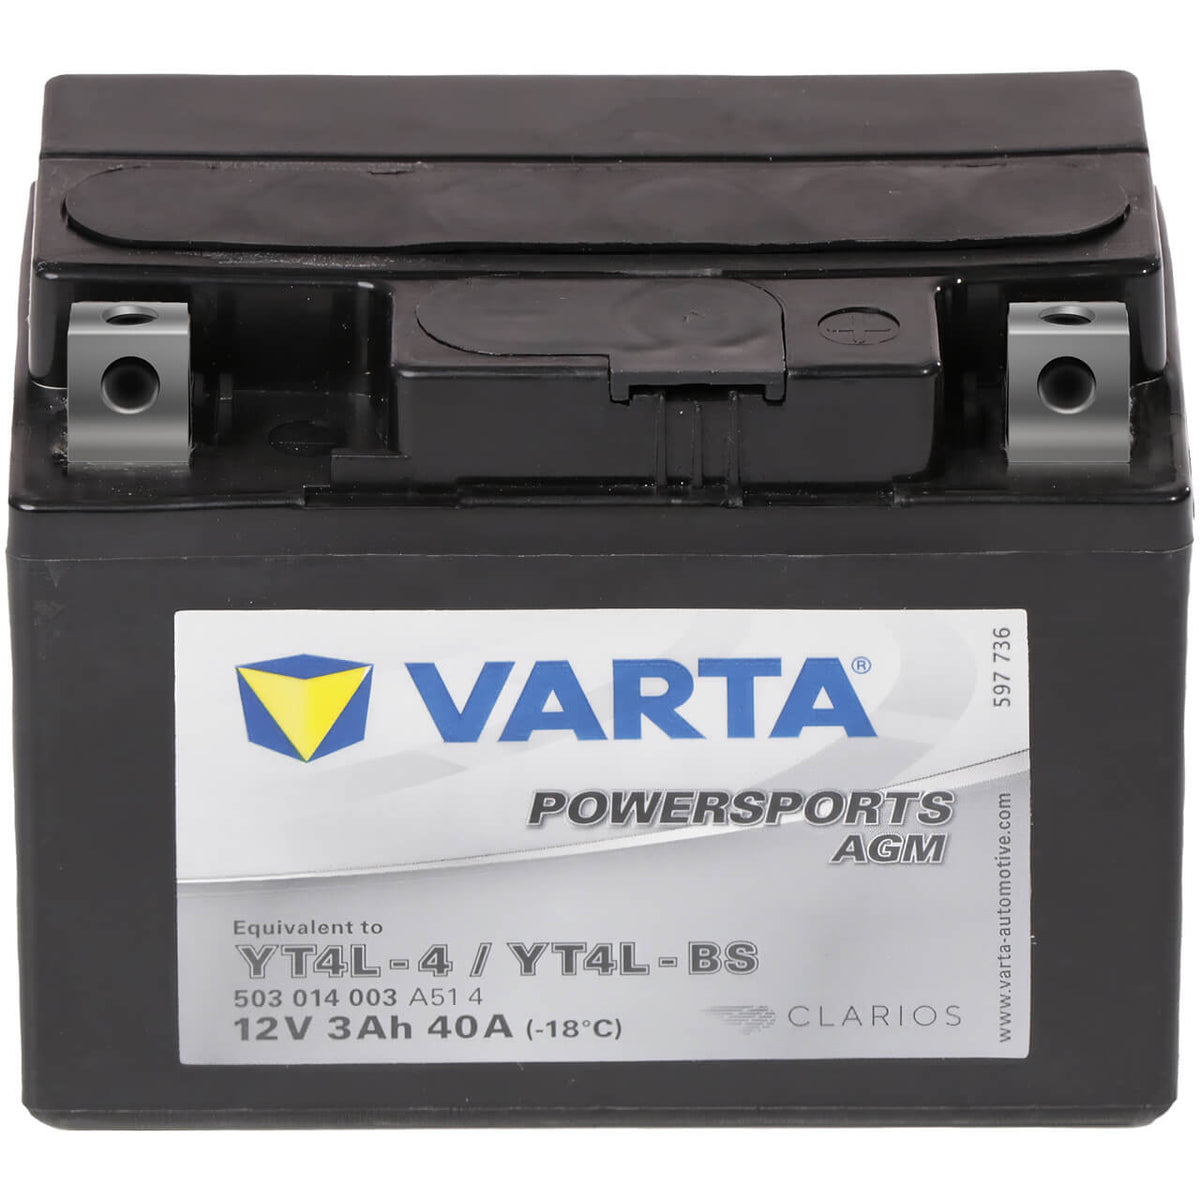 Motorradbatterie Varta Powersports AGM YT4L-BS 50314 12V 3Ah Front